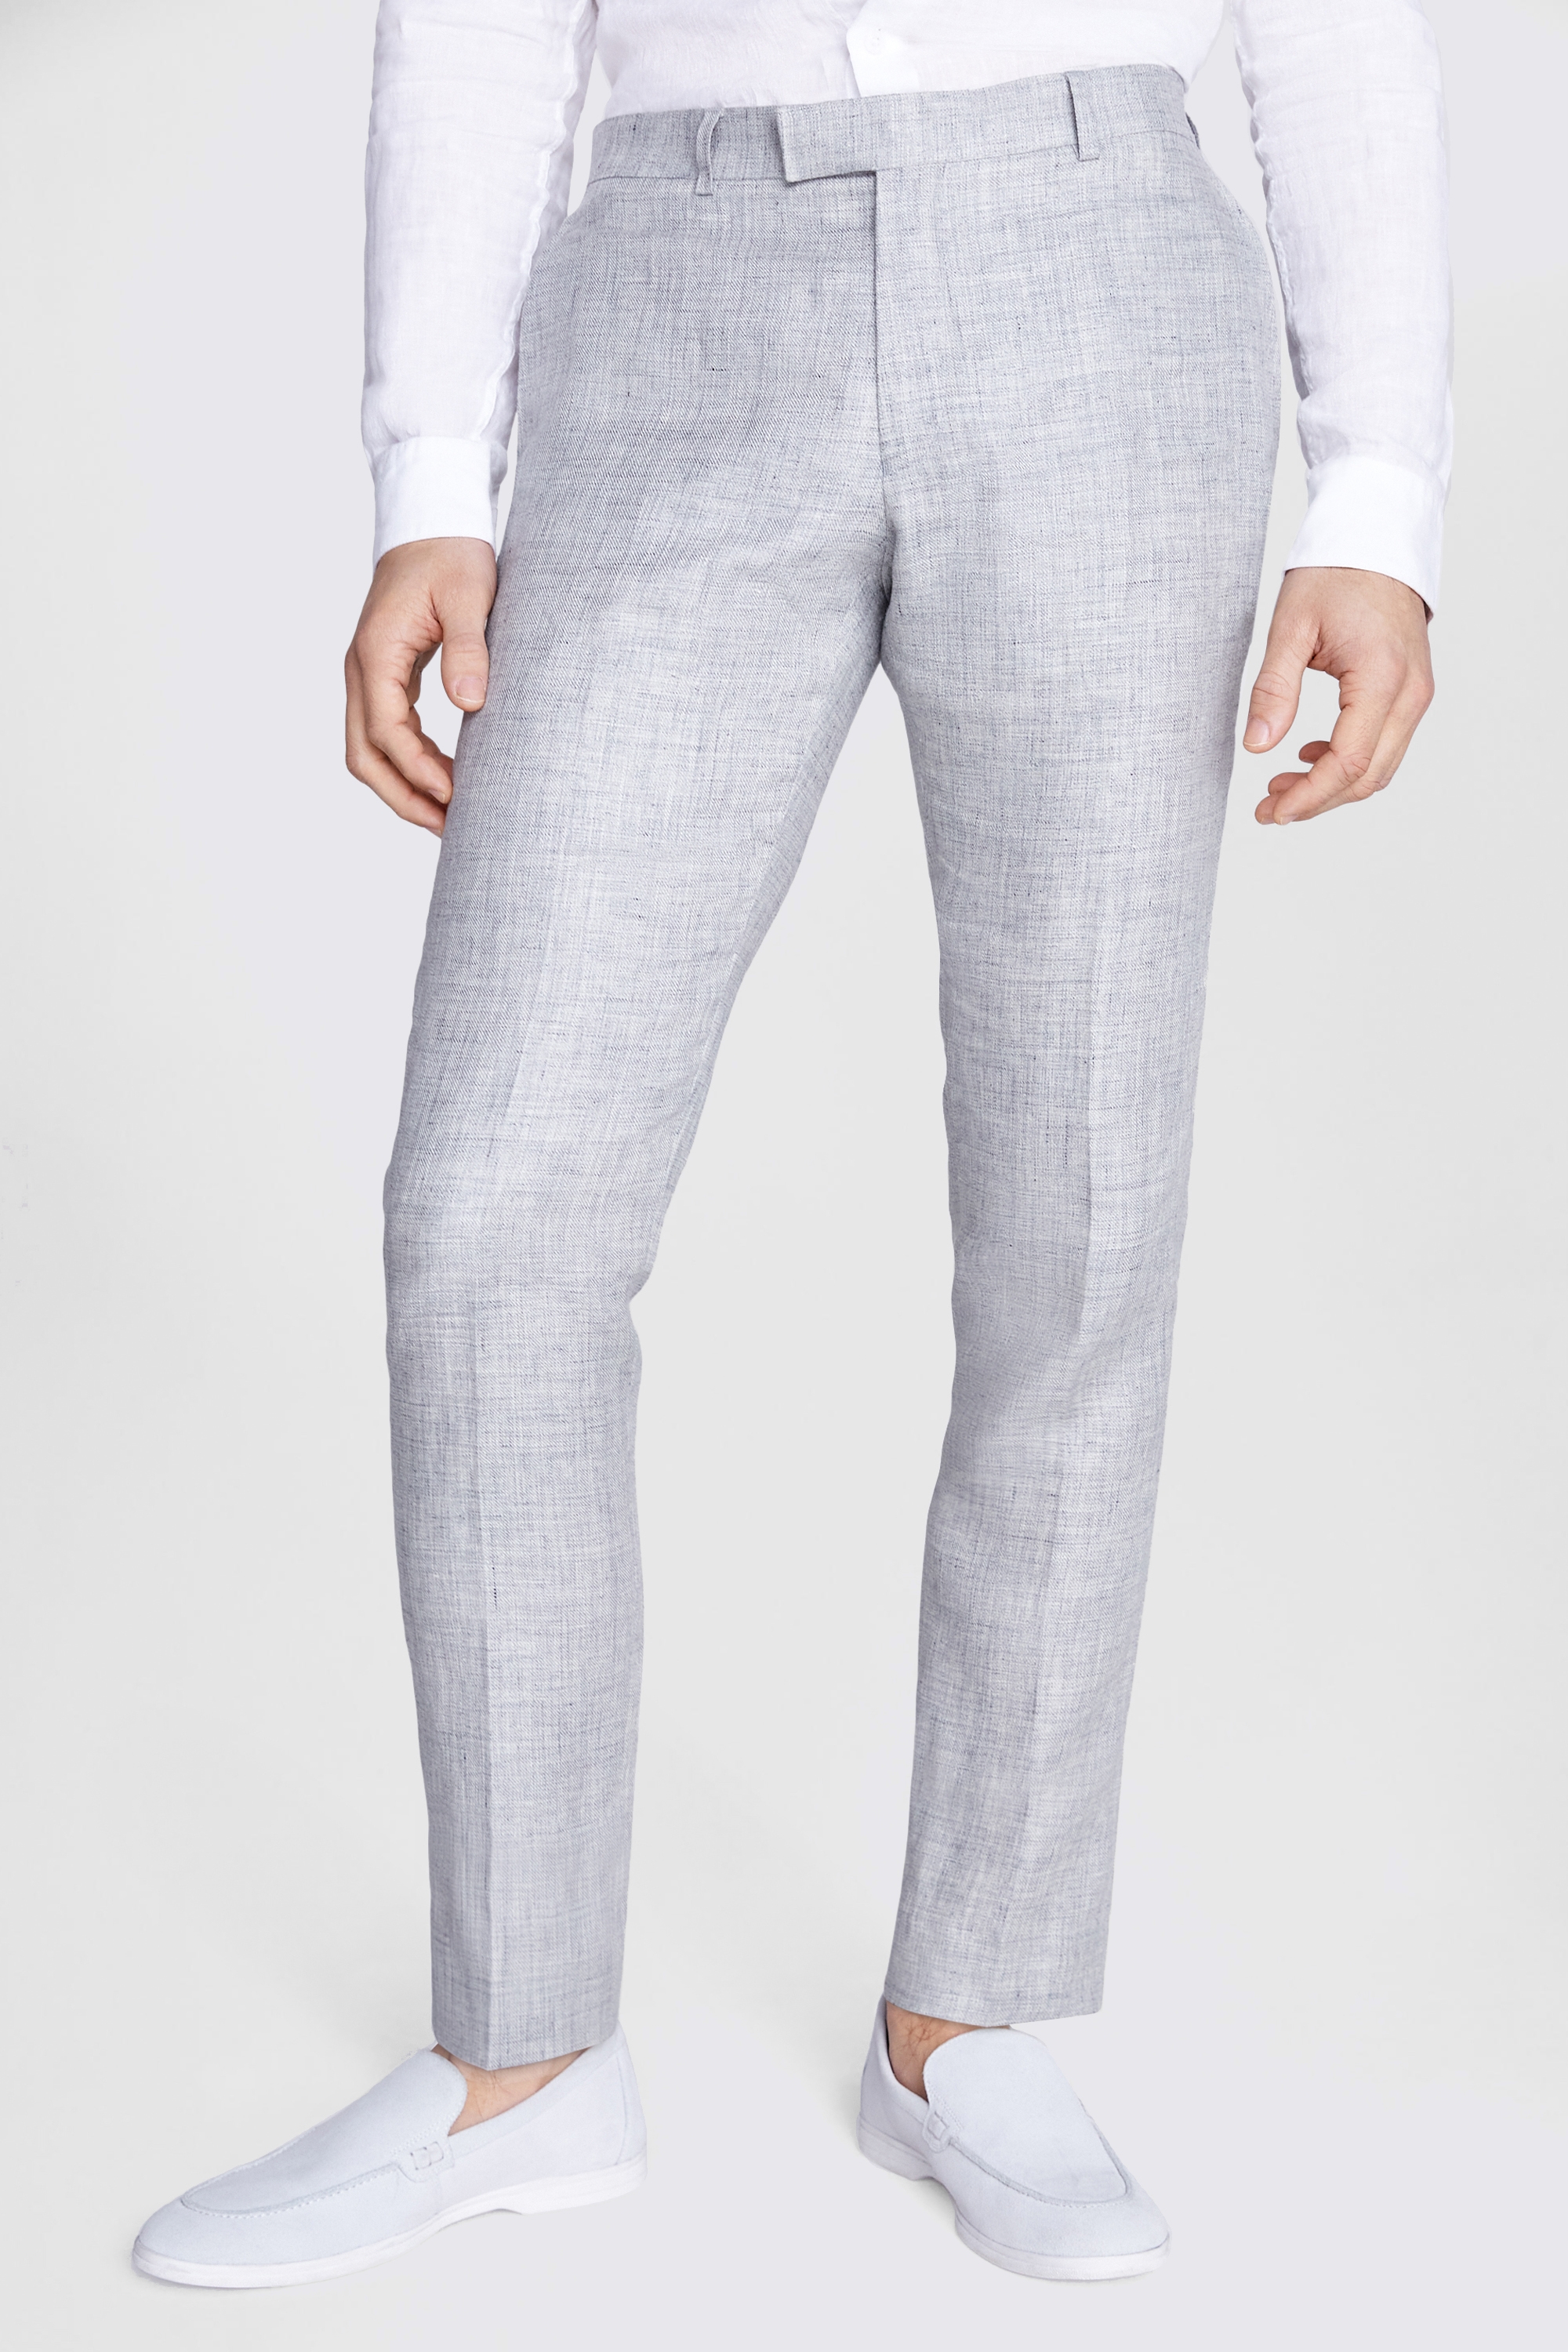 Kona Classic Linen Pant  Grey  Manan